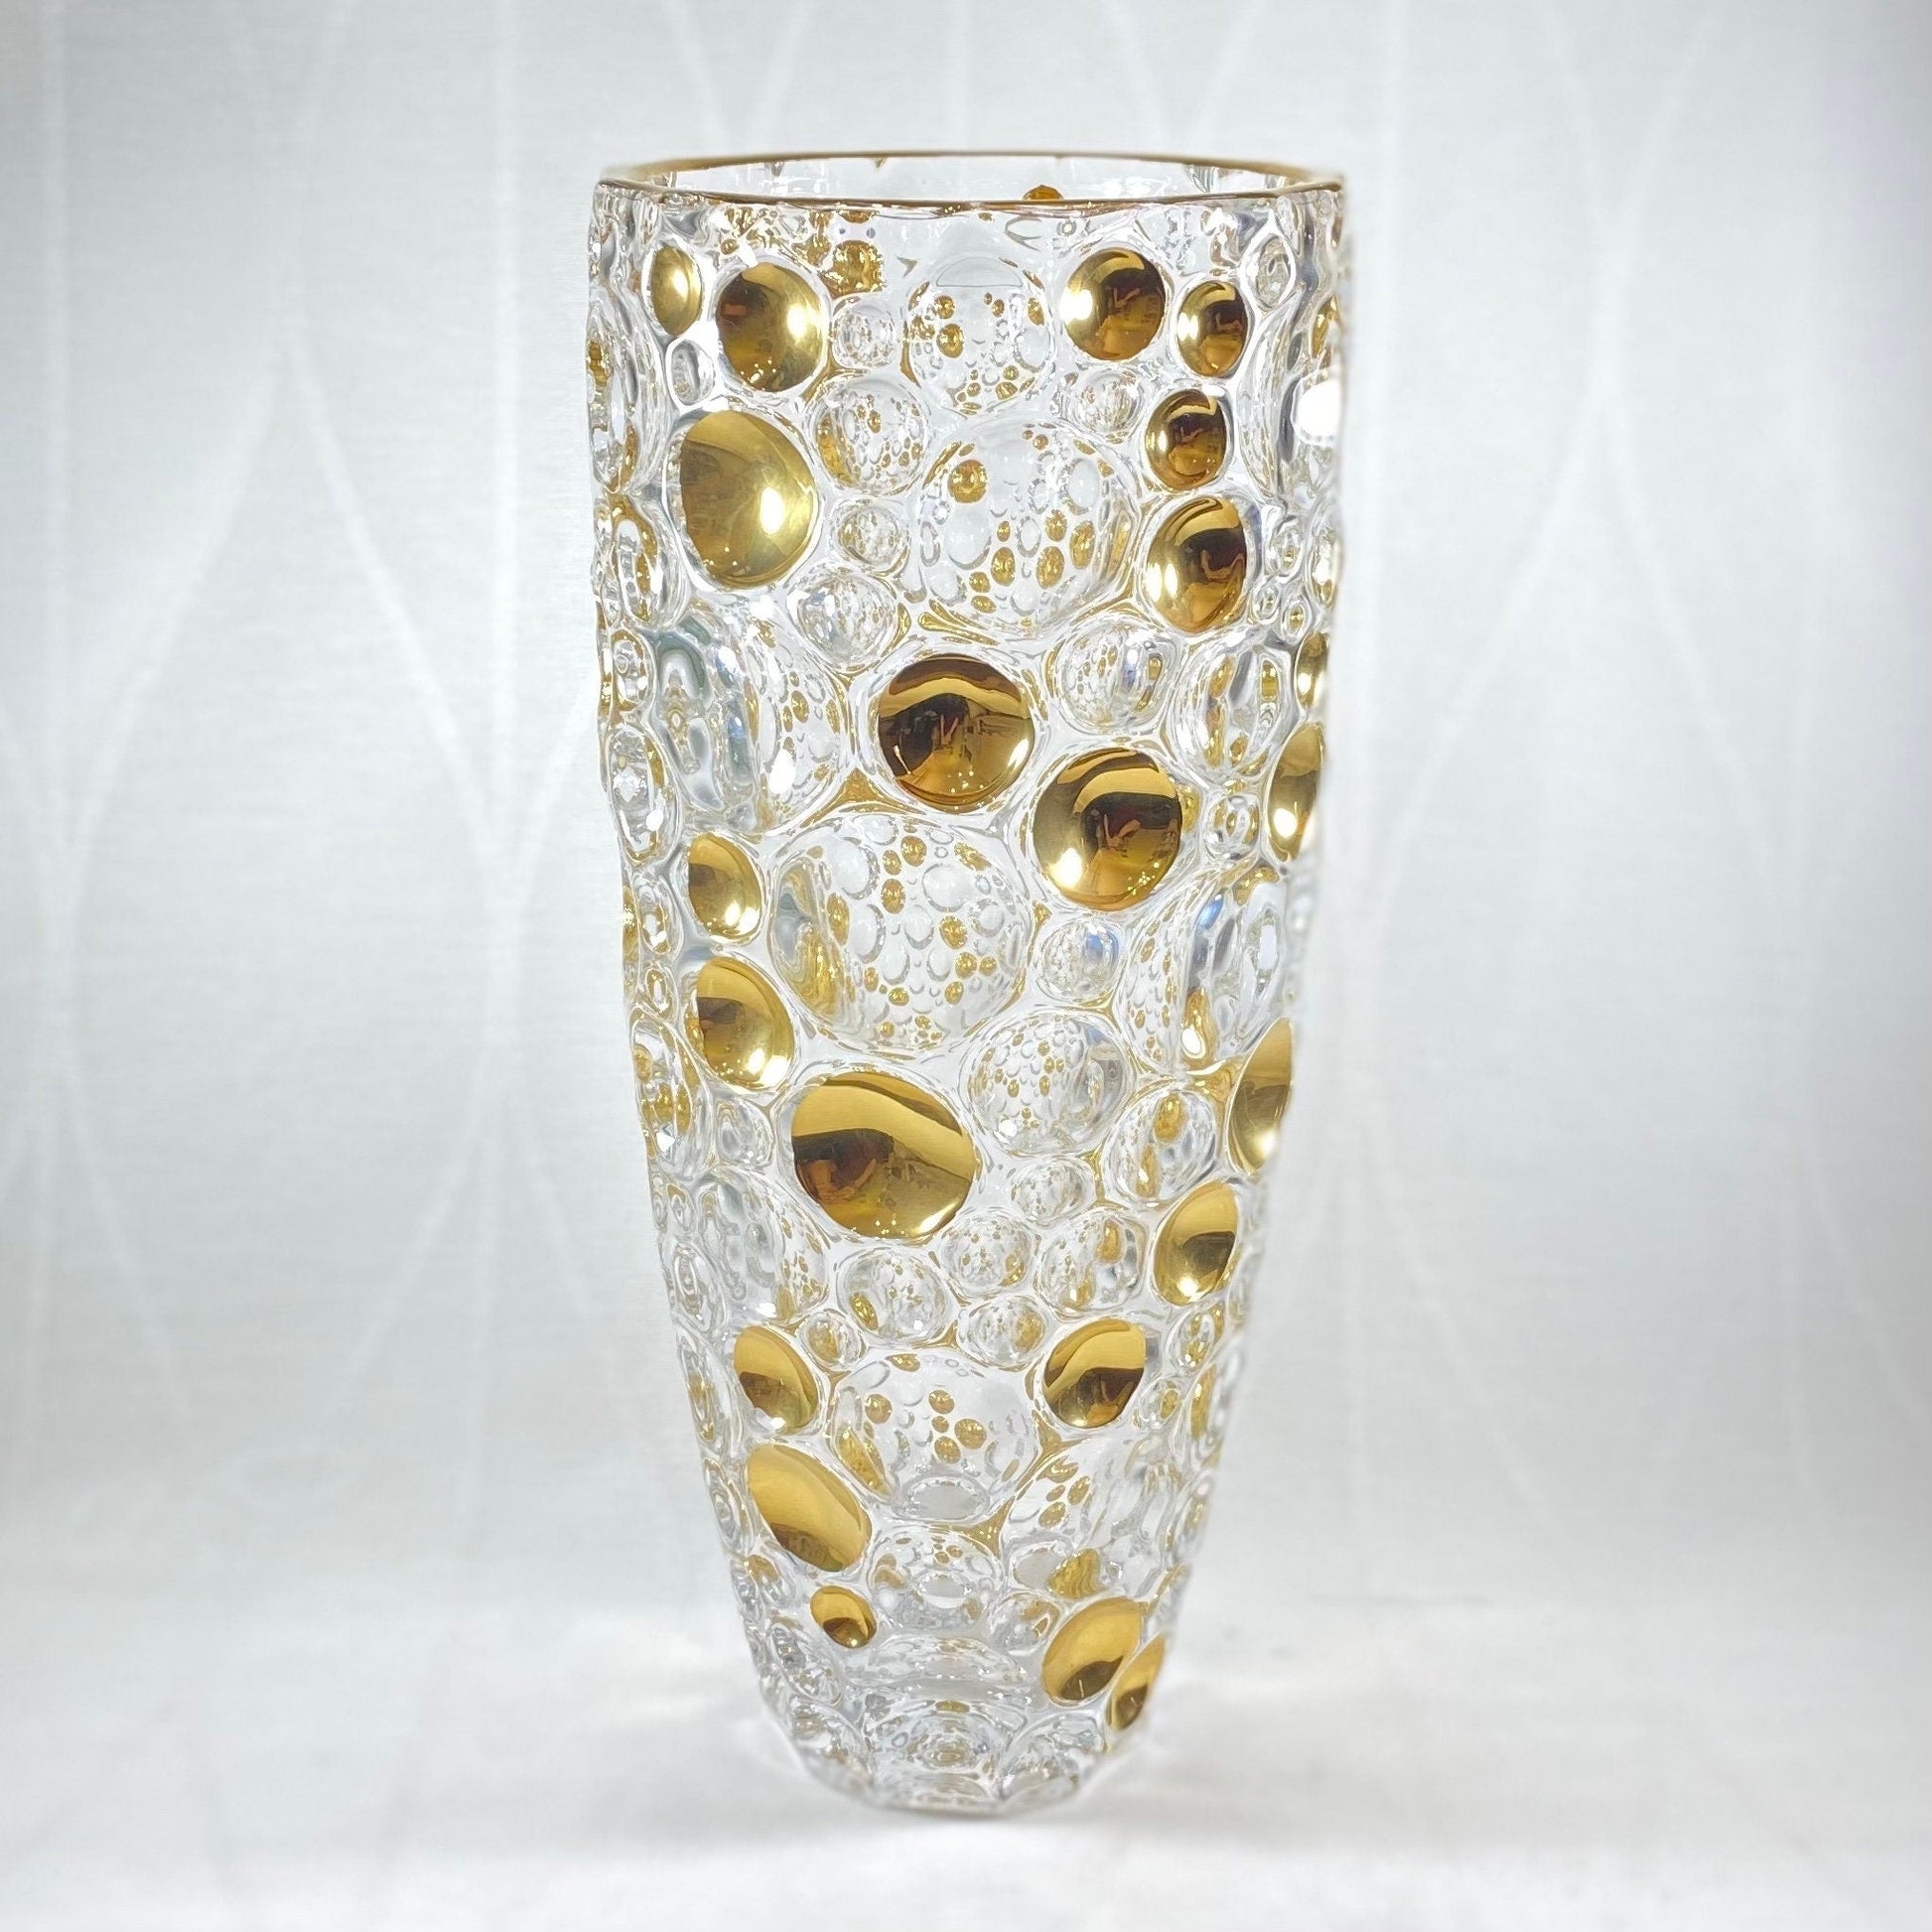 24kt Gold Large Kaleidoscope Venetian Glass Vase - Handmade in Italy, Colorful Murano Glass Vase